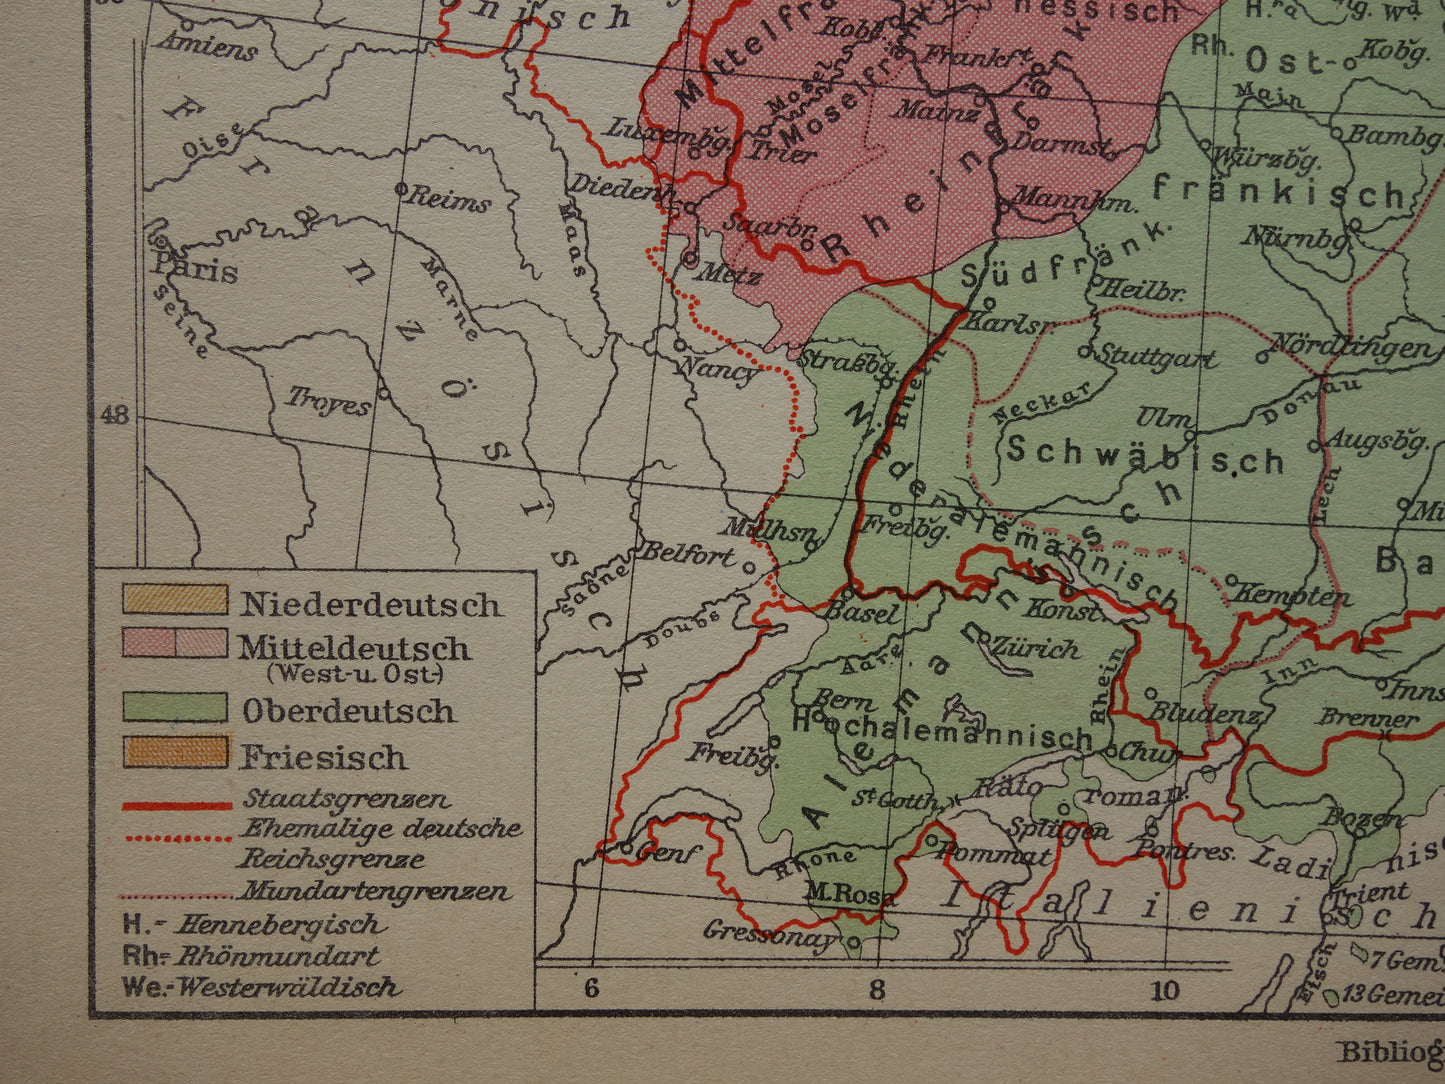 DUITSLAND oude taalkundige kaart van Duitse dialecten - kleine originele vintage landkkaart uit 1931 van het Duitse rijk dialect - taalkaart Hoogduits Nederduits